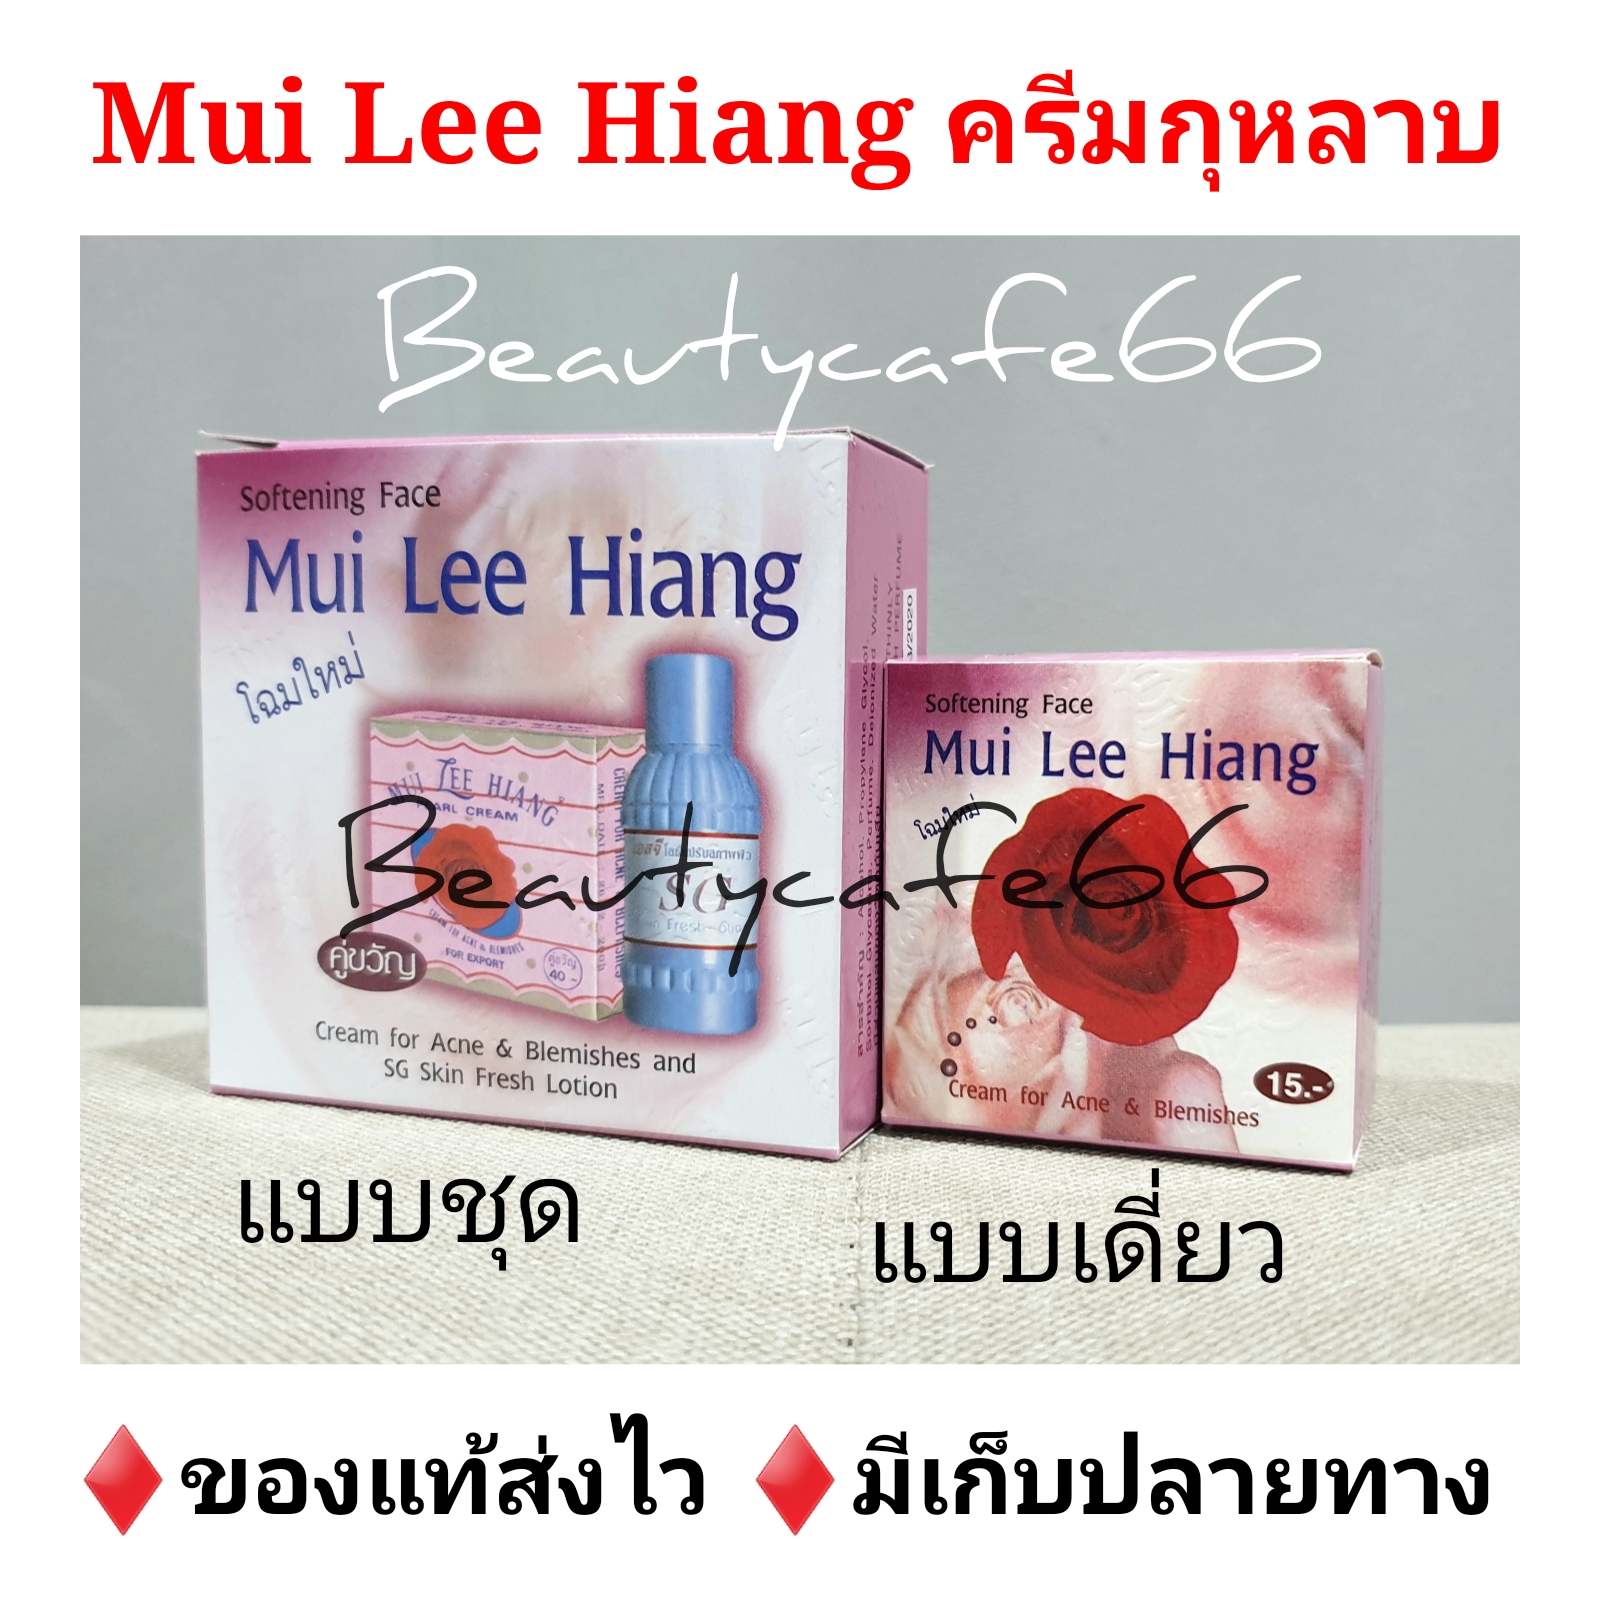 (แบบชุด 40 บาท / แบบเดี่ยว 15 บาท) ครีมกุหลาบ มุย ลี เฮียง Mui Lee Hiang + โลชั่นเอสจี SG มุยลีเฮียง